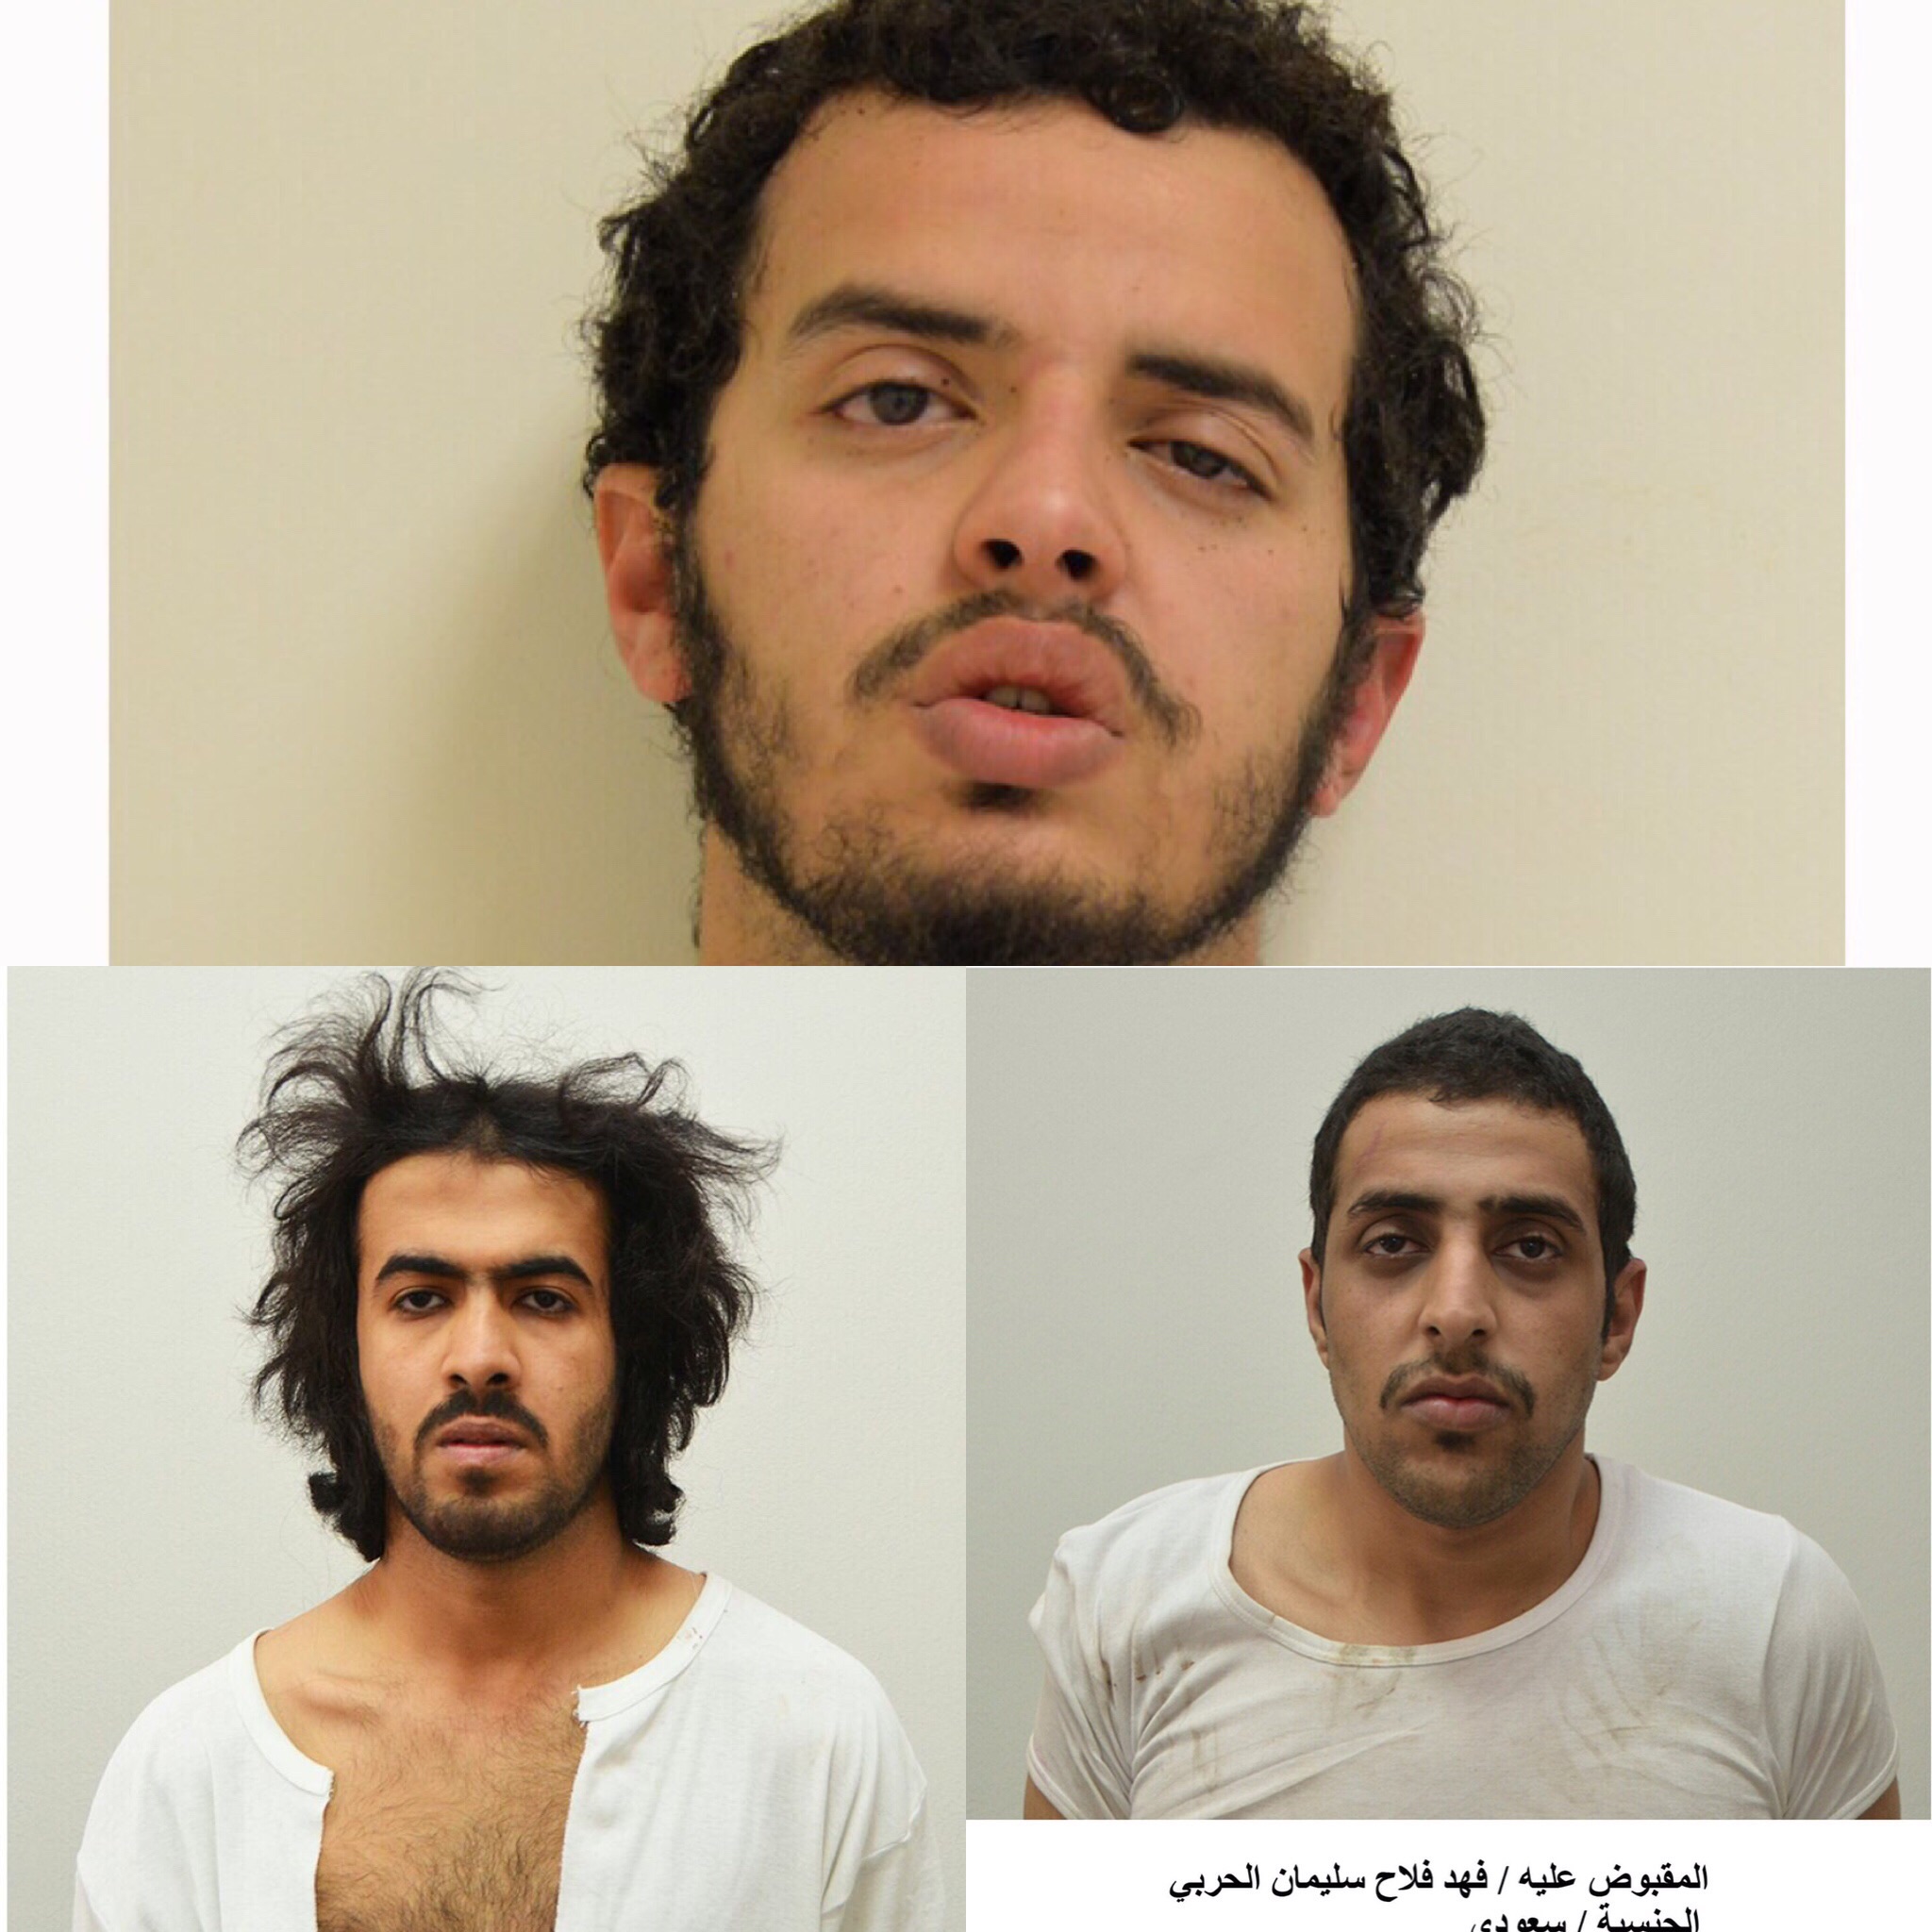 #الداخلية تكشف تفاصيل مهاجمة 4 أوكار إرهابية بـ #الرياض و#الدمام